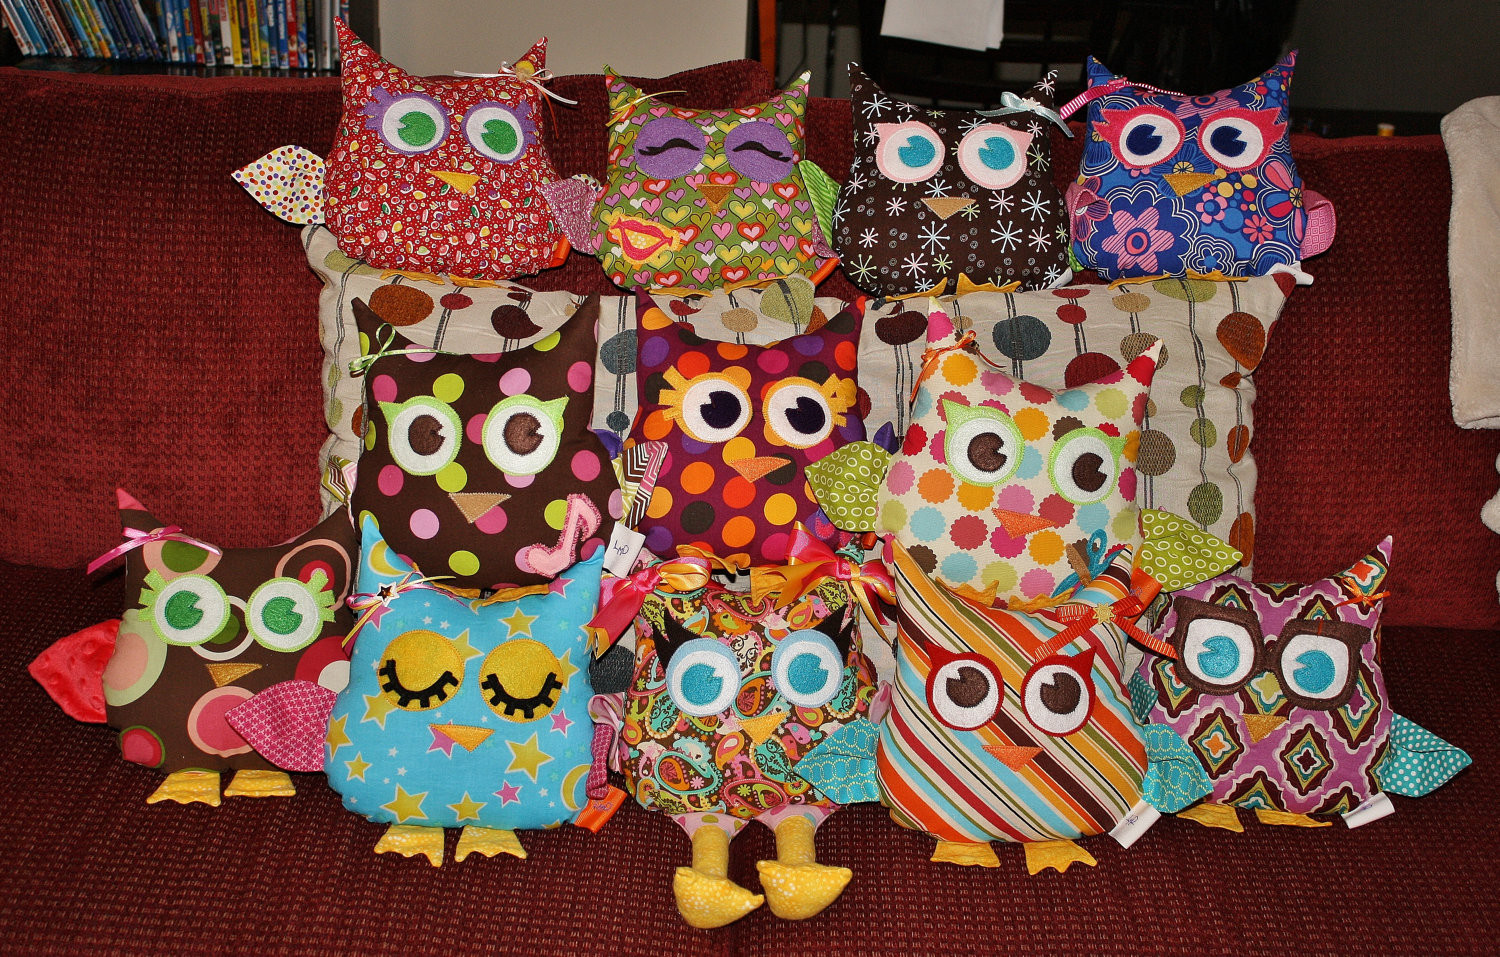 Owl Themed Birthday Party Ideas
 Jen s Happy Place Owl Themed Birthday Party The